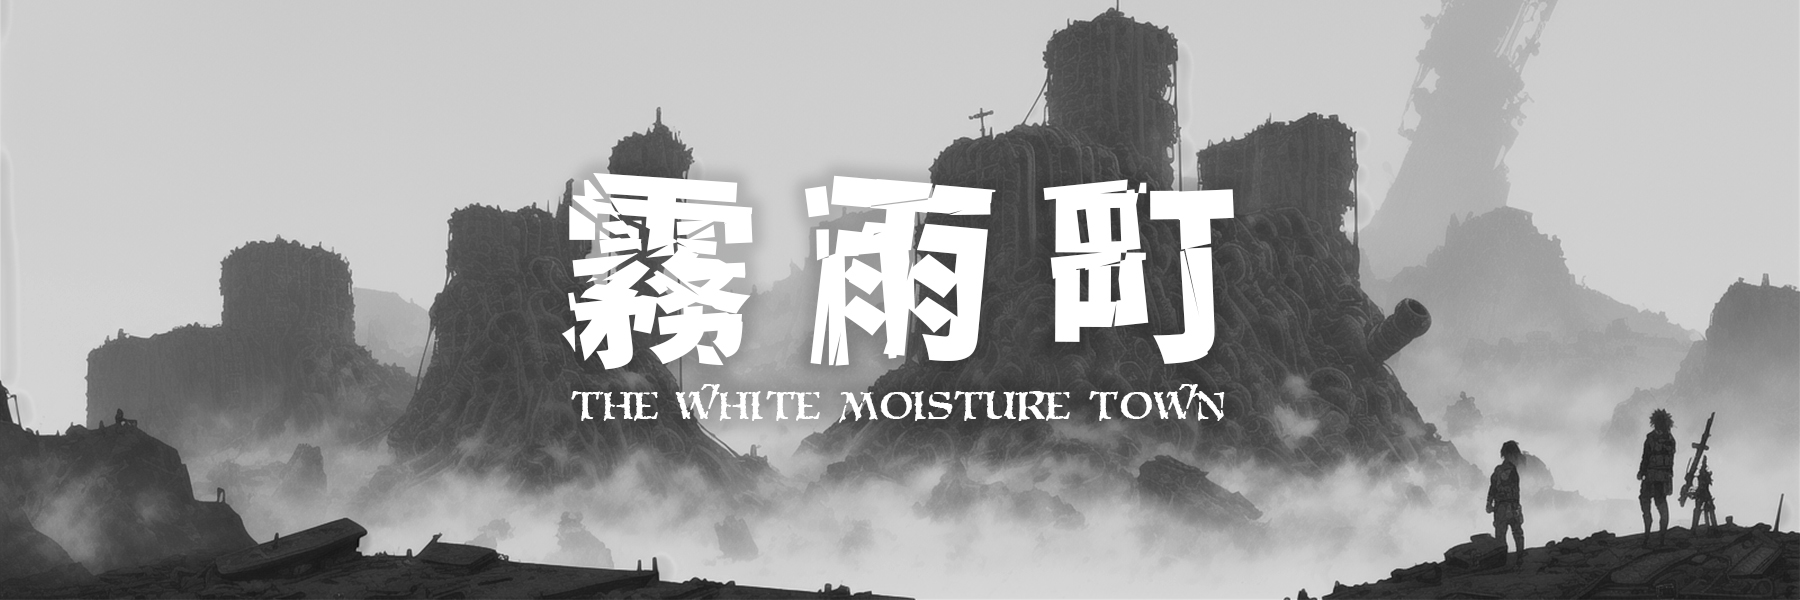 THE WHITE MOISTURE TOWN